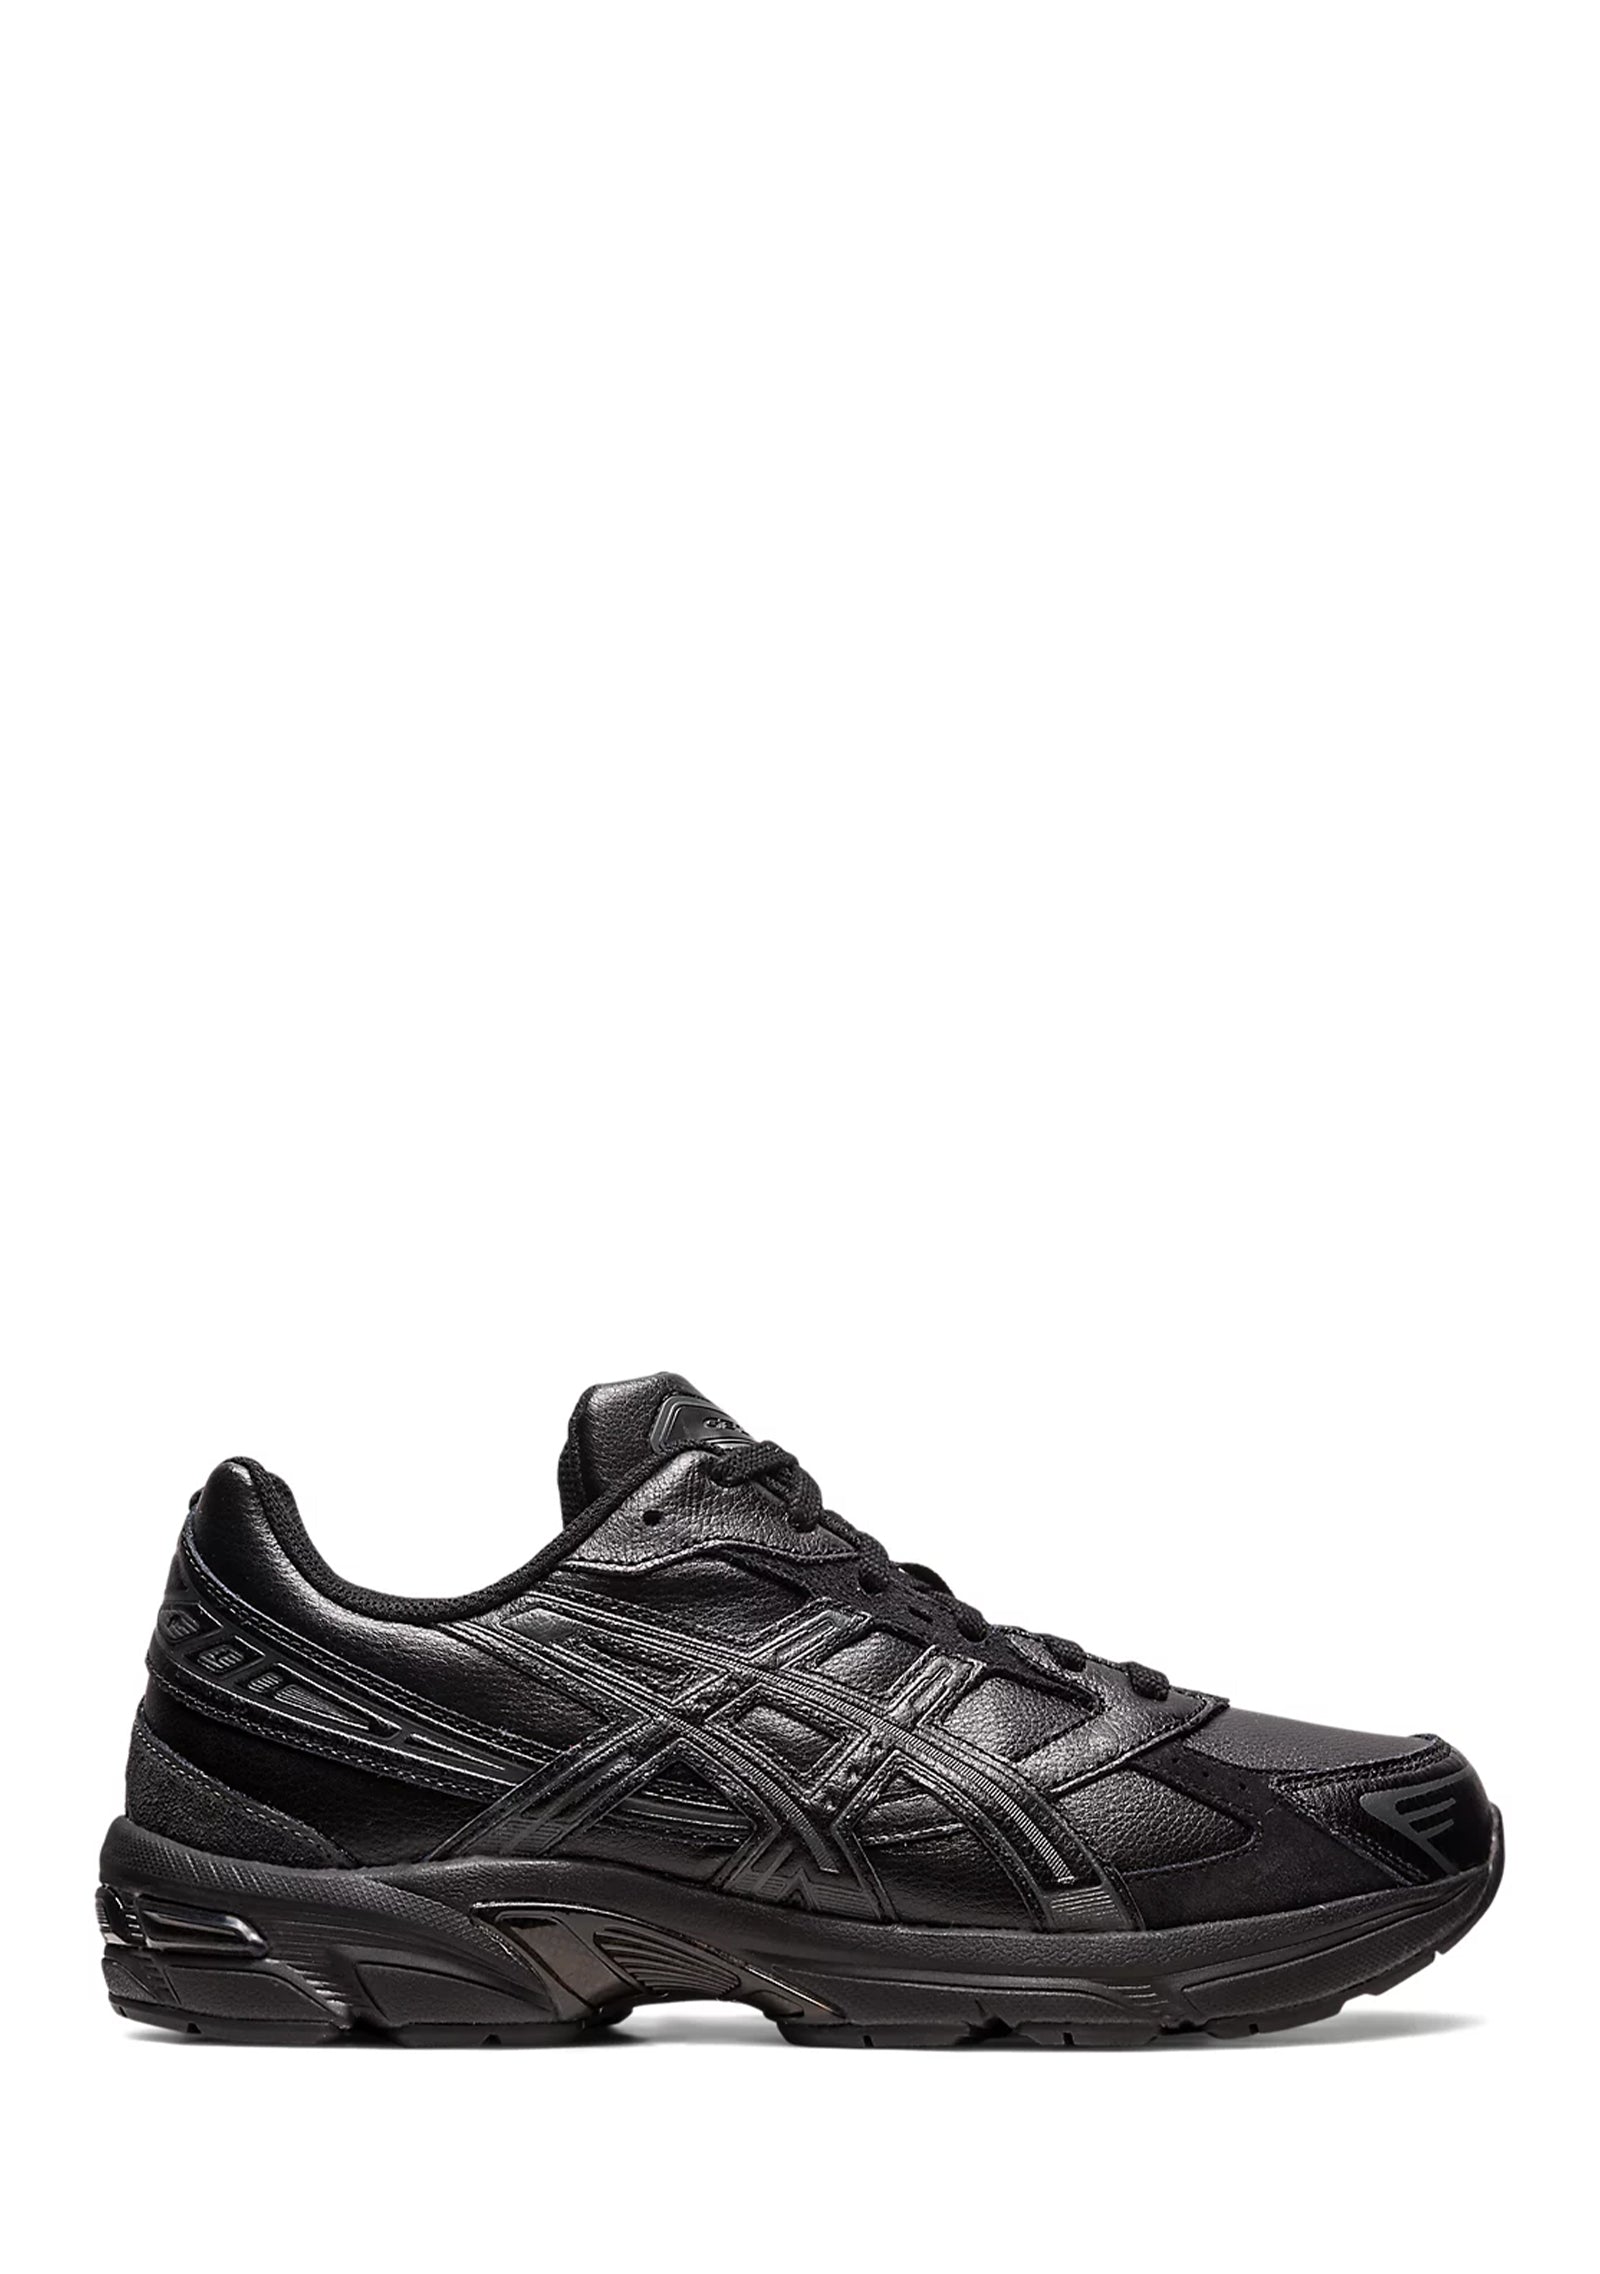 Sneakers Gel-1130 Black/Dark Grey